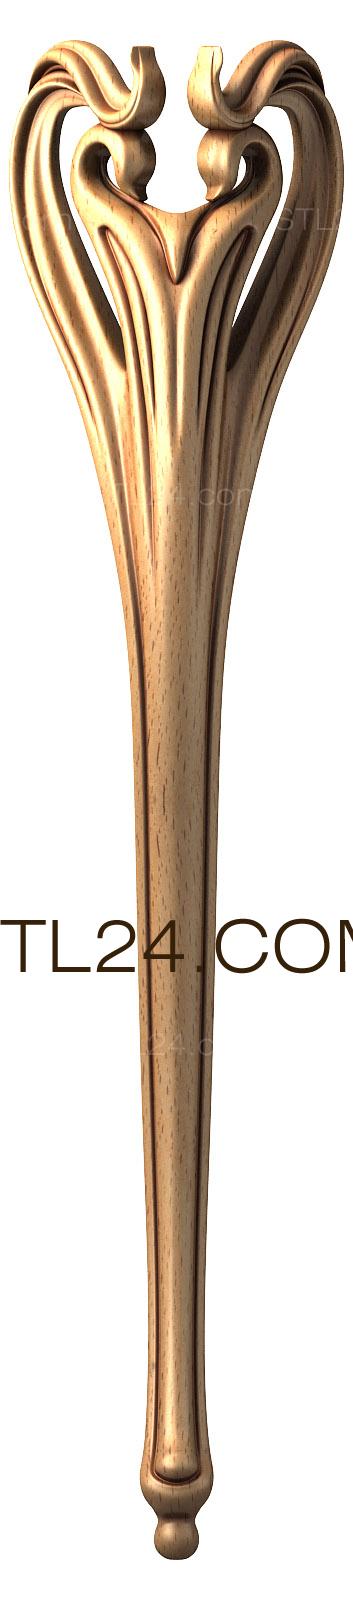 Ножки (NJ_0278) 3D модель для ЧПУ станка